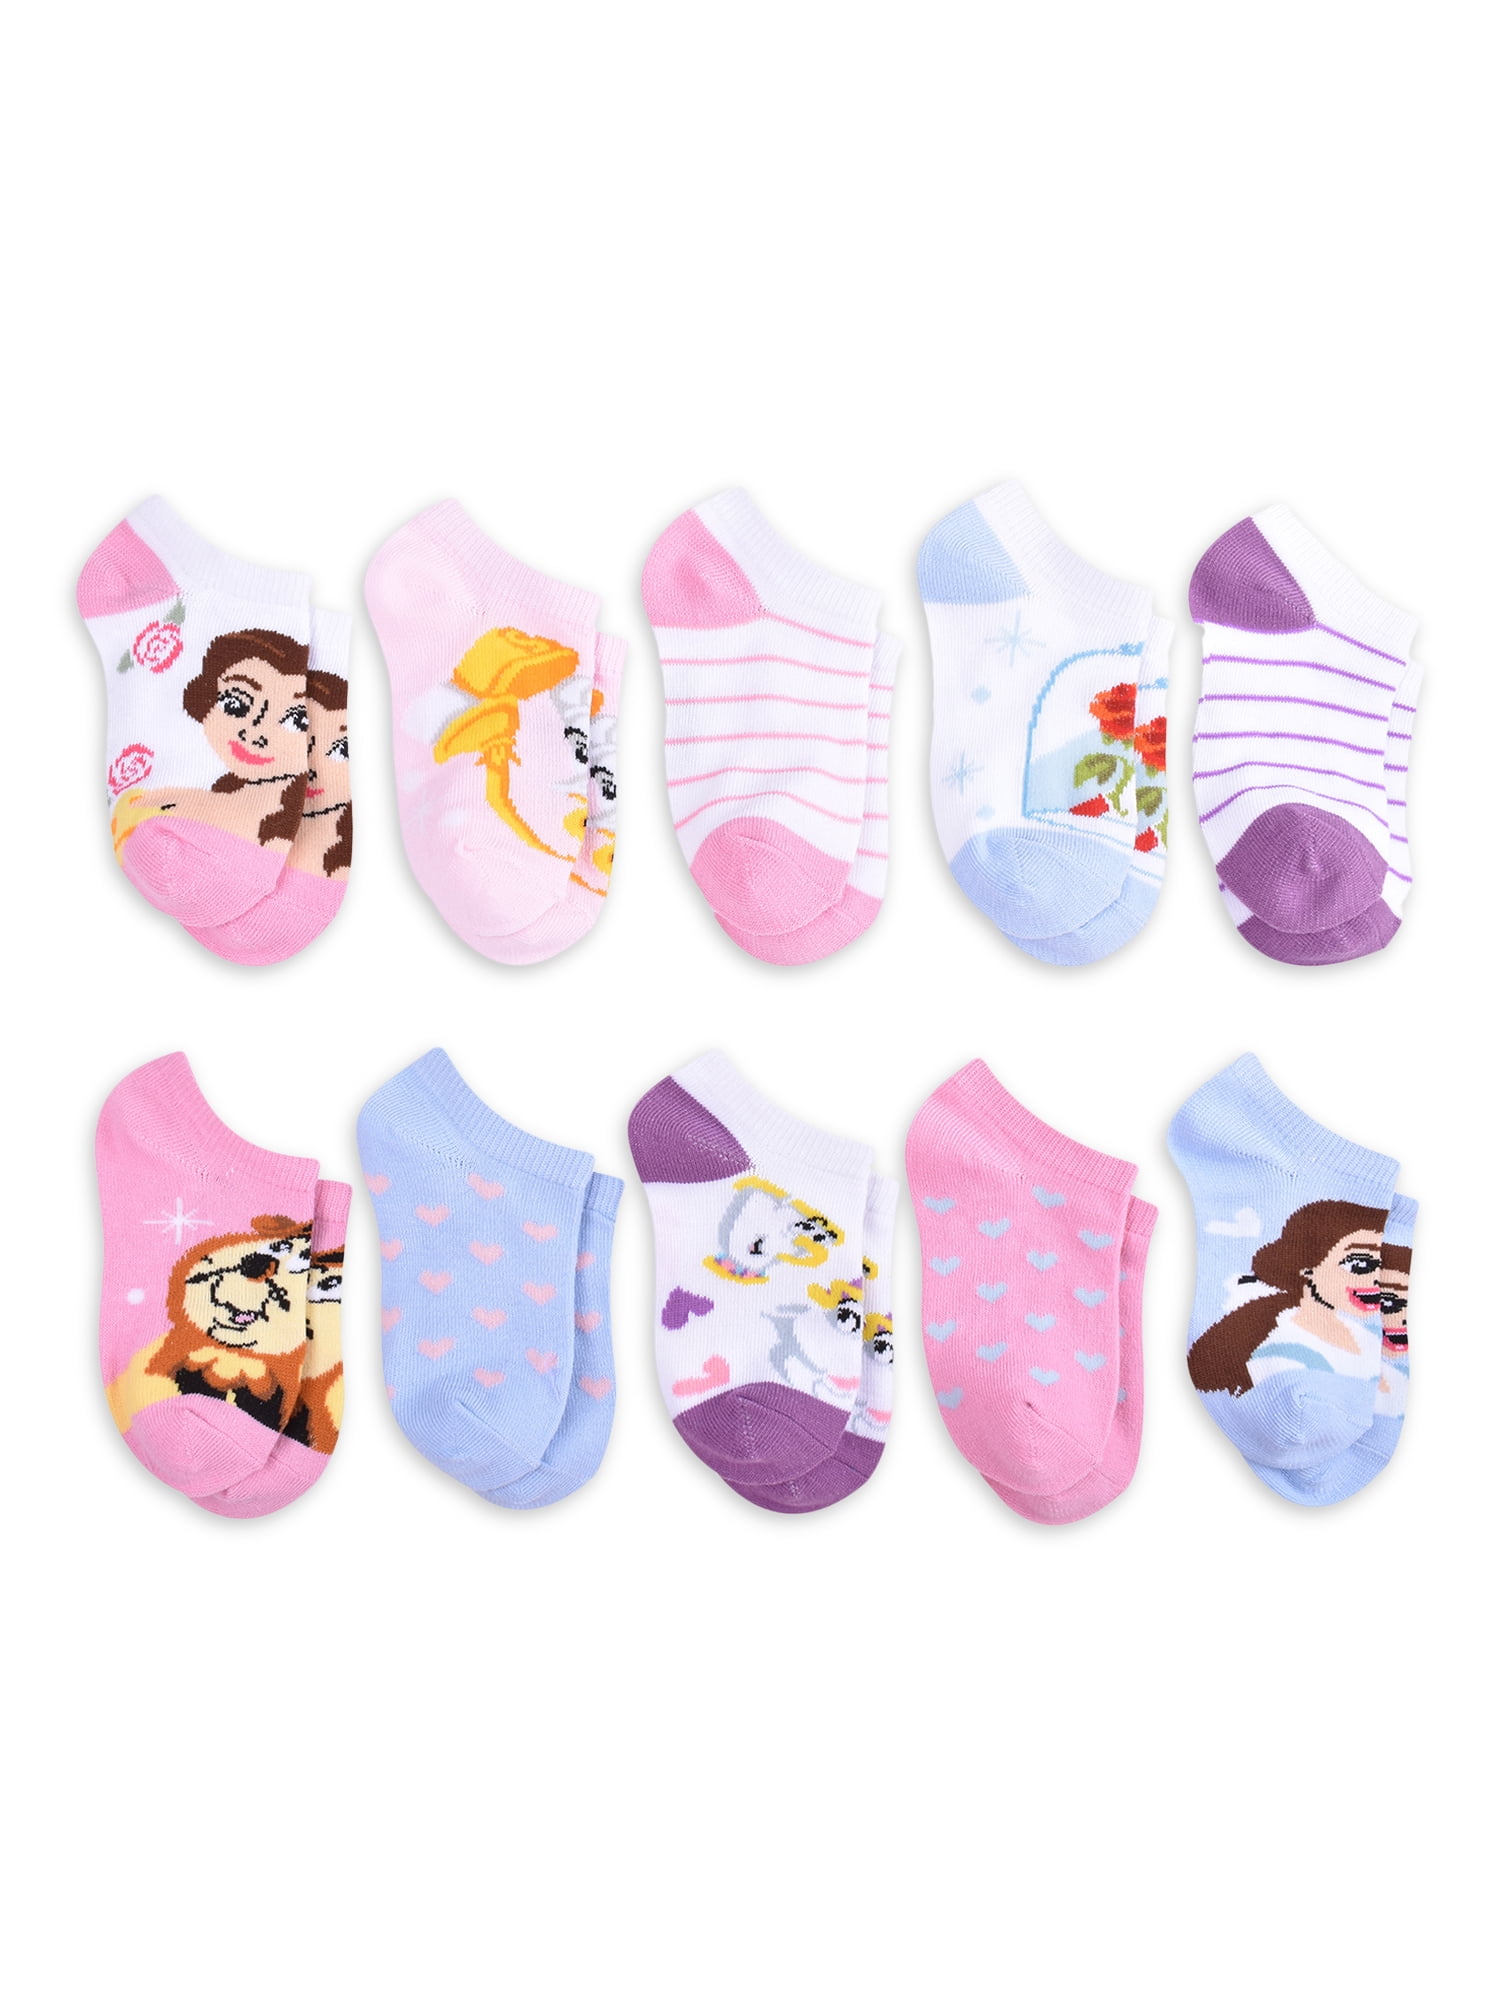 M&S Girls Disney Frozen 2 Elsa Anna 2 Pack Cosy Slipper Socks 4-7 & 12.5-3.5 